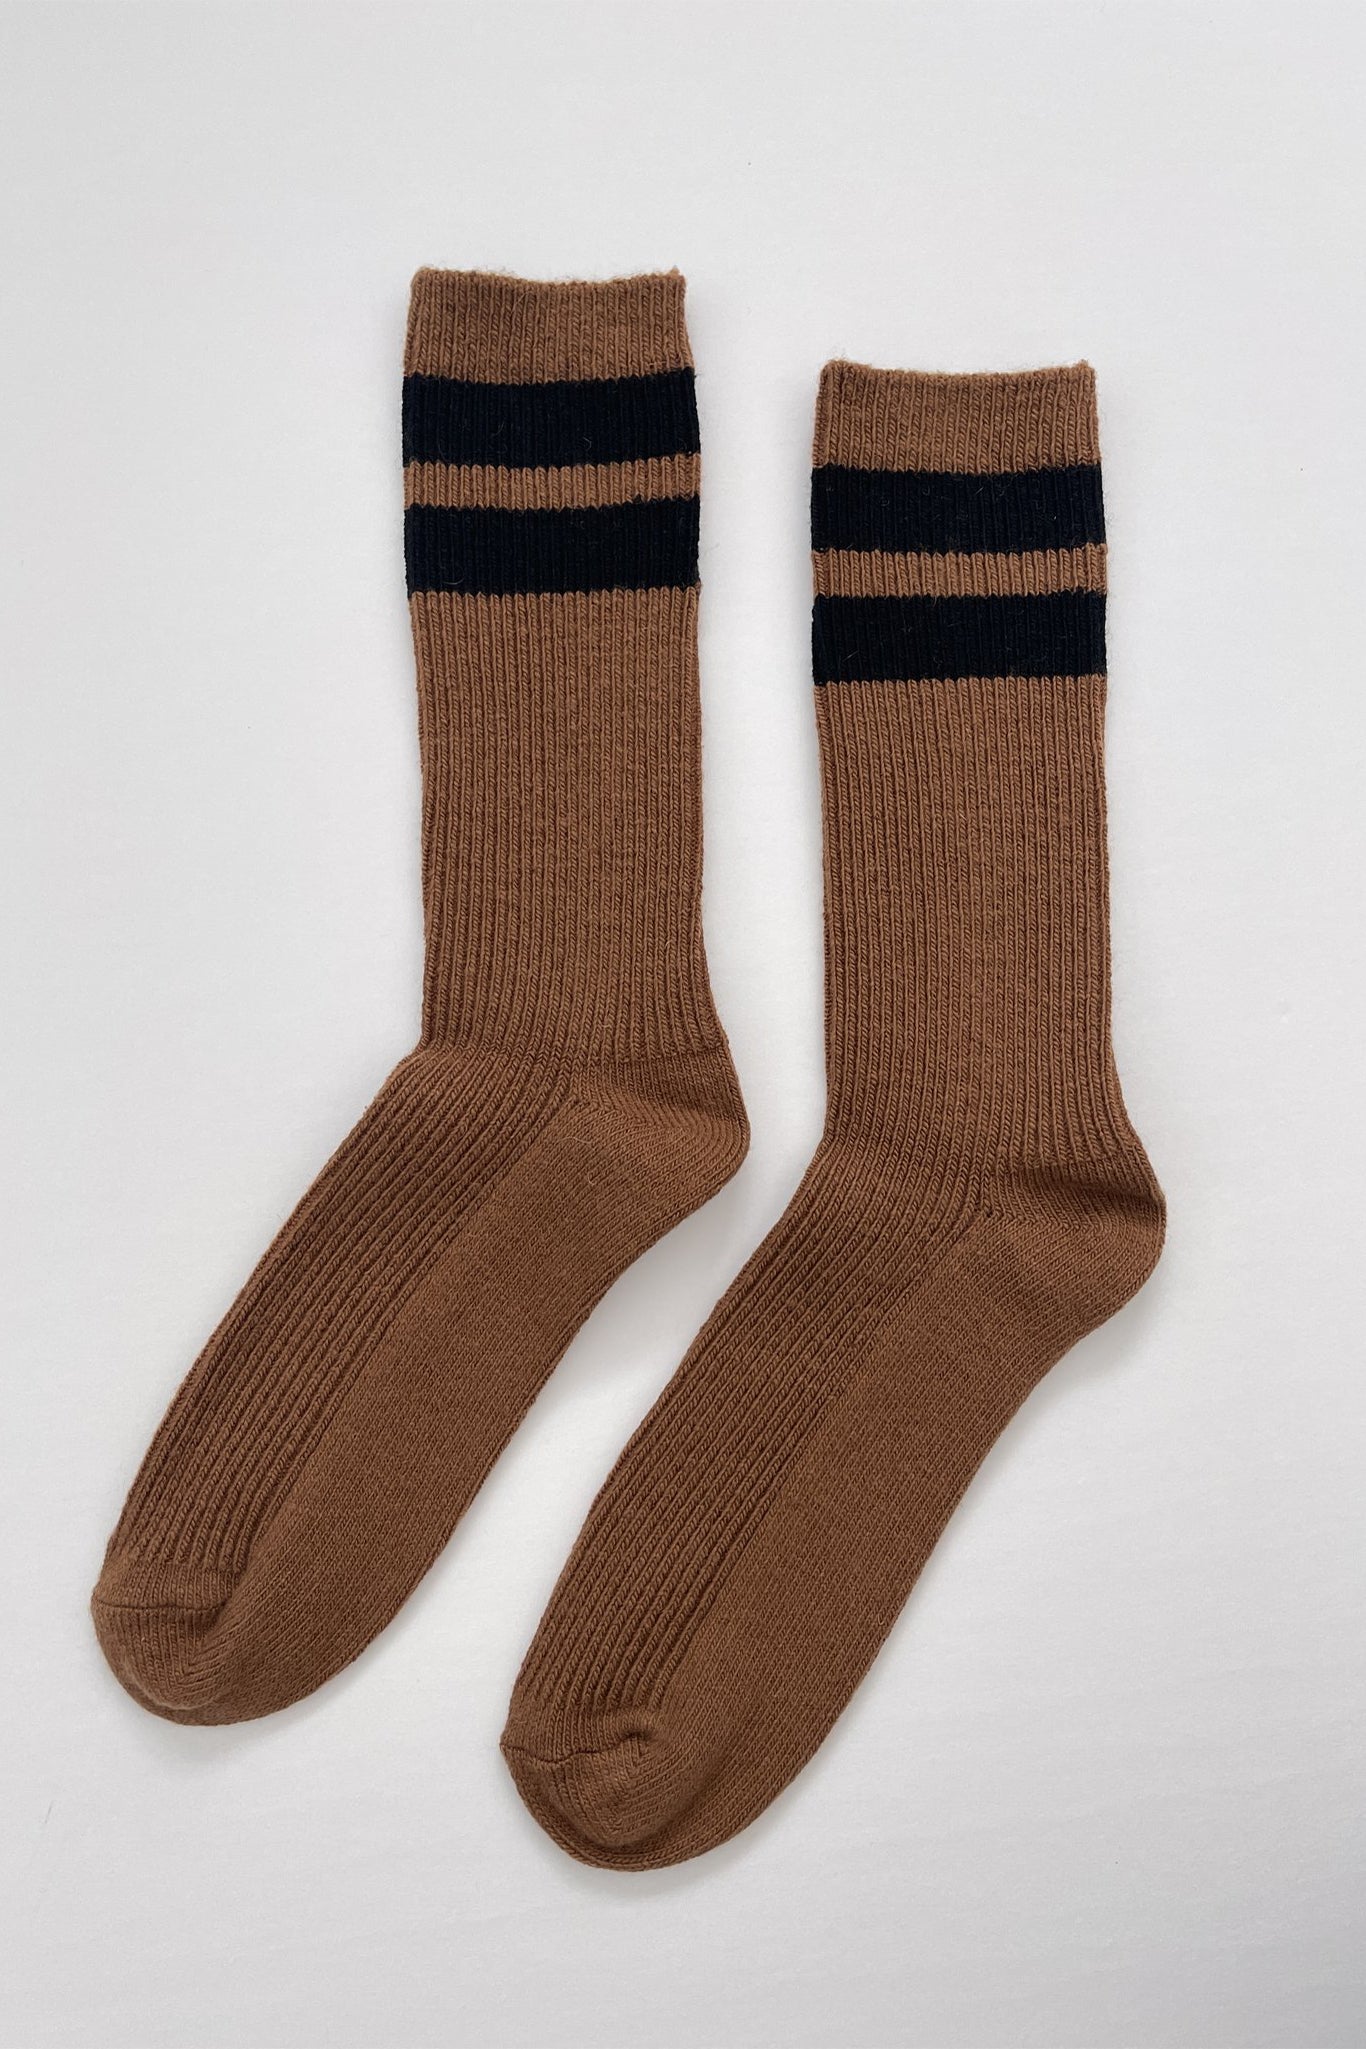 Le Bon Shoppe Grandpa Varsity Sock - Tawny – M.PATMOS